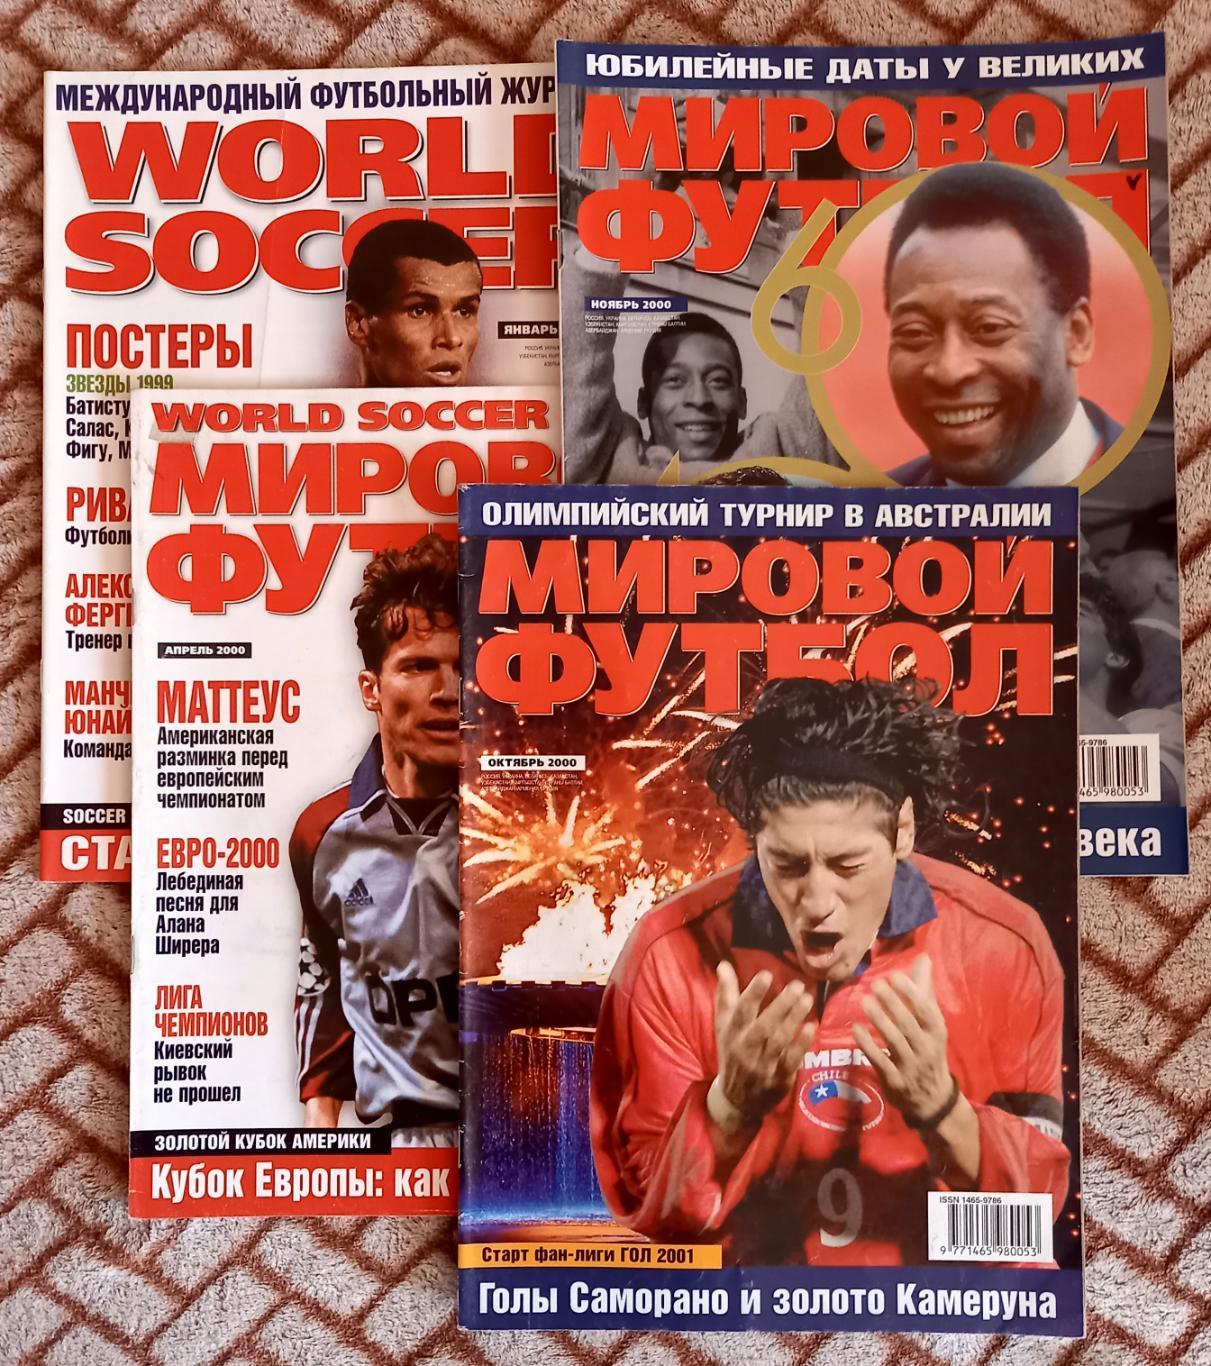 Футбол. Журнал Мировой футбол (World Soccer на русском). 1999 (июнь)